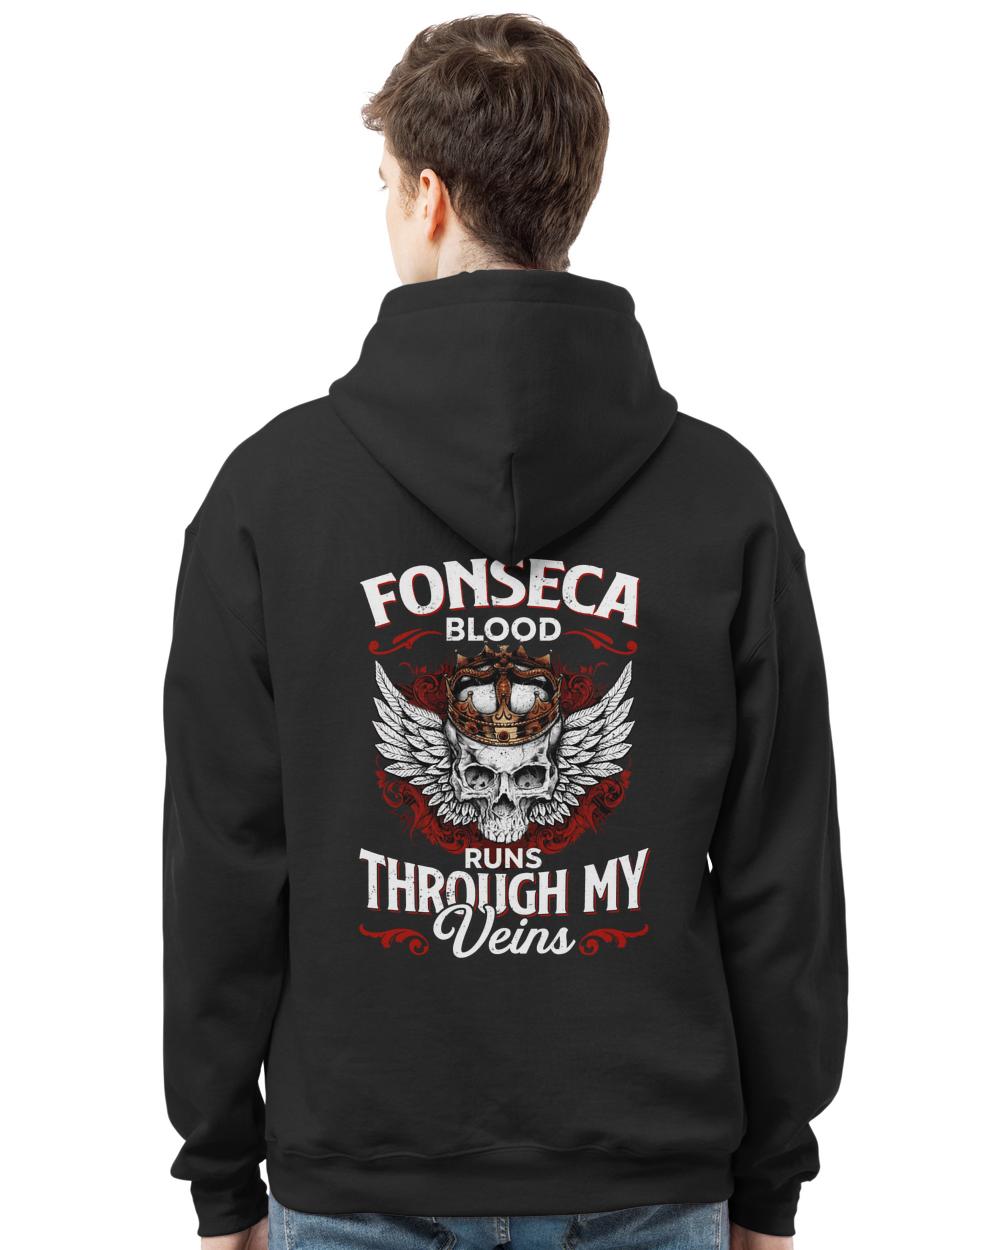 FONSECA-13K-39-01